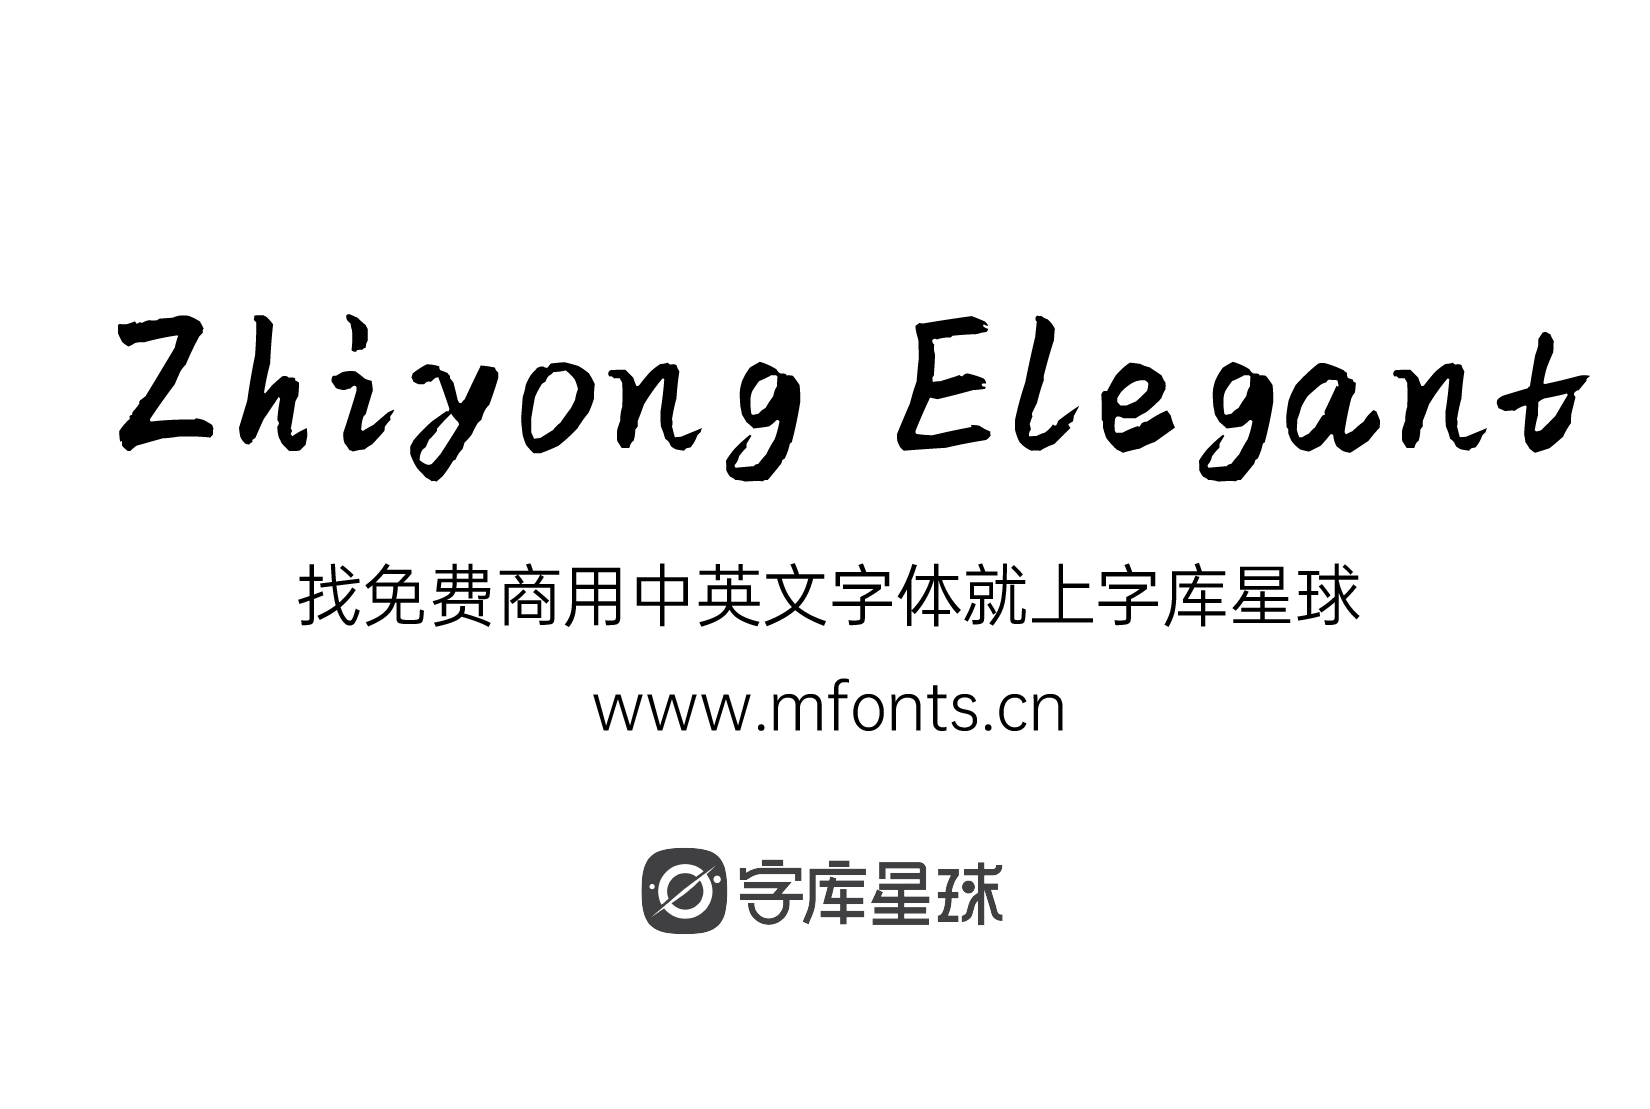 Zhiyong Elegant